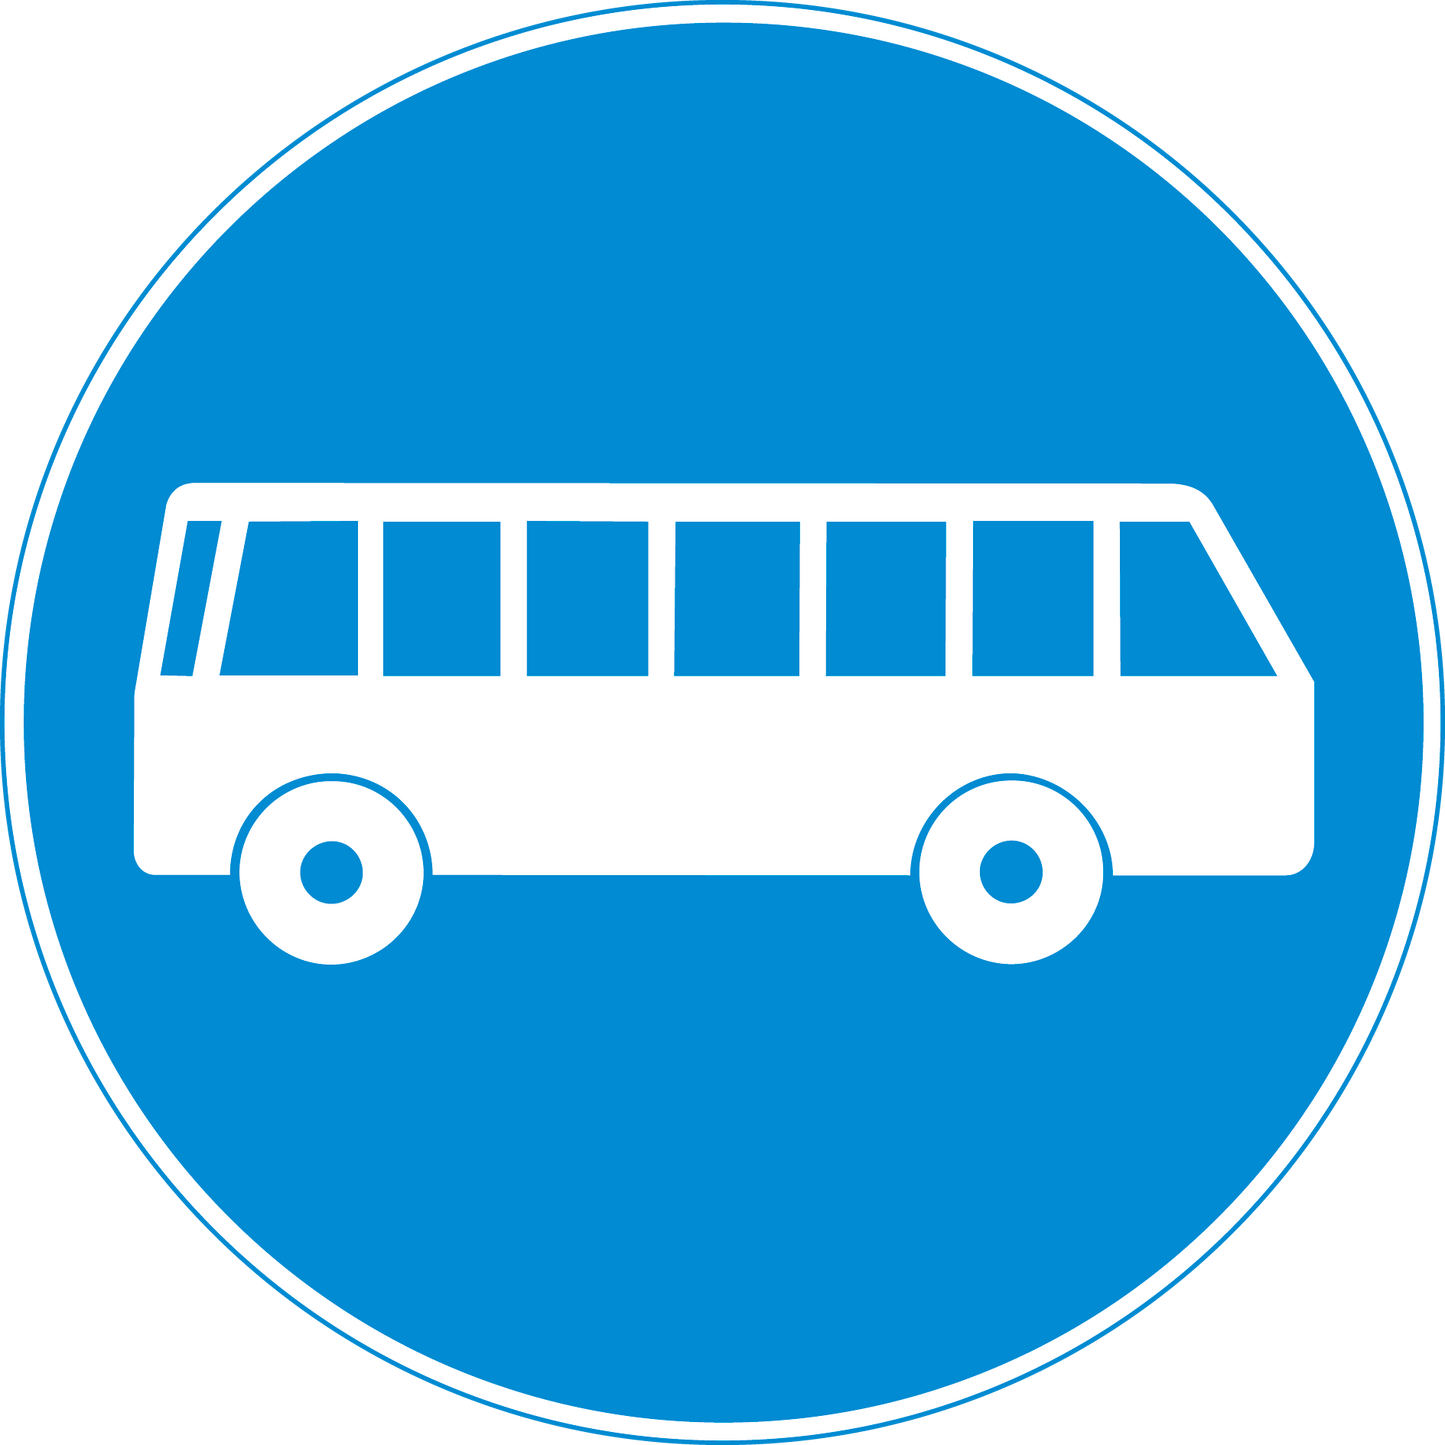 Vorschriftssignal 2.64 Busfahrbahn 40cm HIP/R2